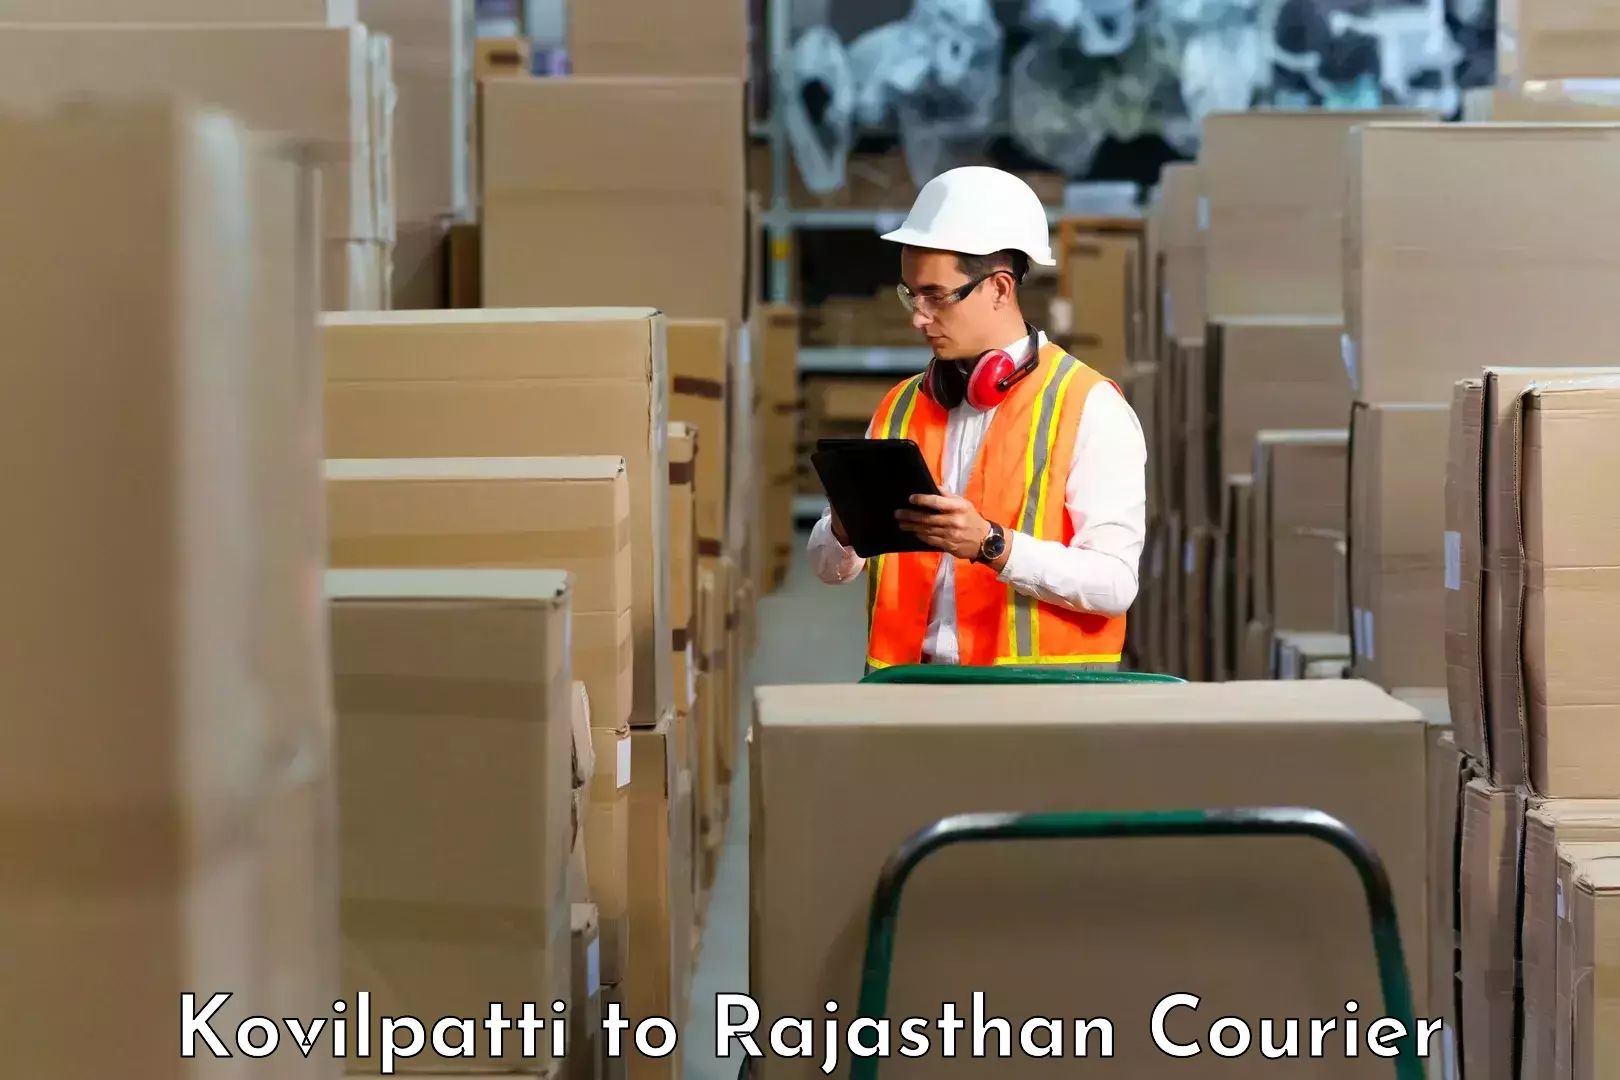 Delivery service partnership Kovilpatti to Chhabra